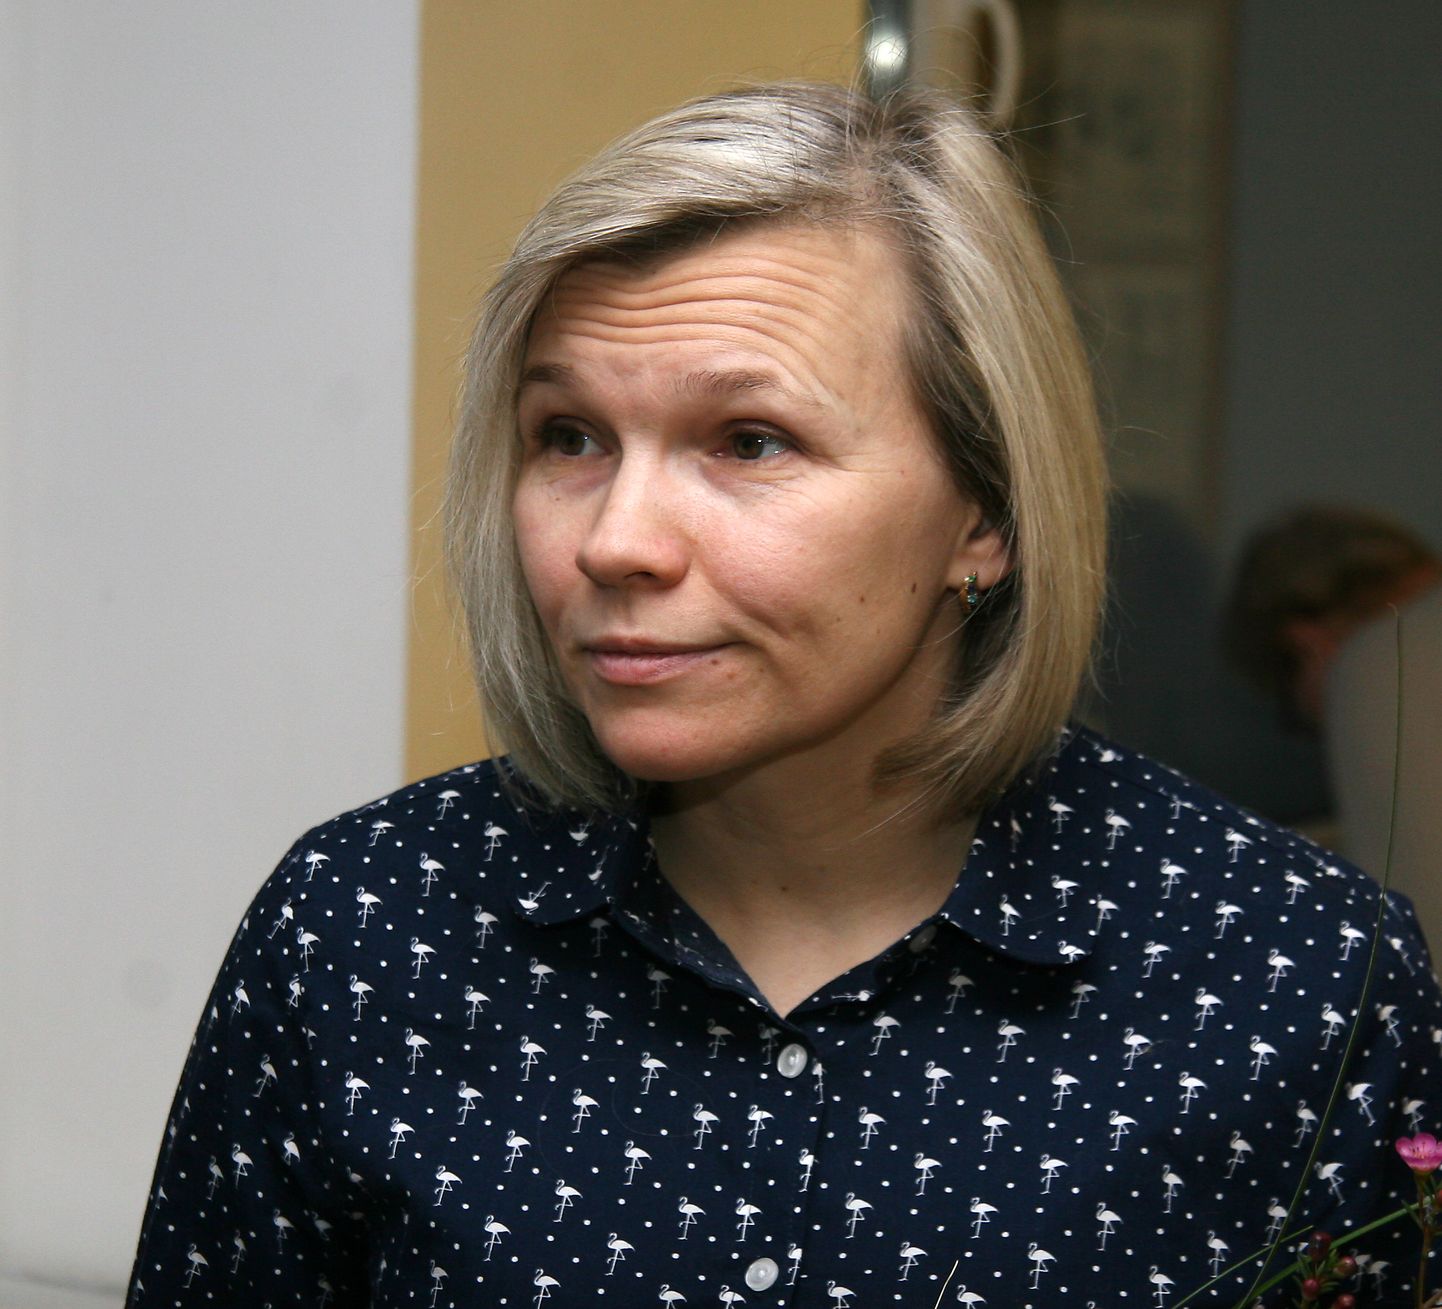 Руководитель Кохтла-Ярвеского виртуального филиала Ольга Жаркова с удовольствием продолжает сотрудничество с "АРТкино", ведь это разнообразит впечатления горожан.